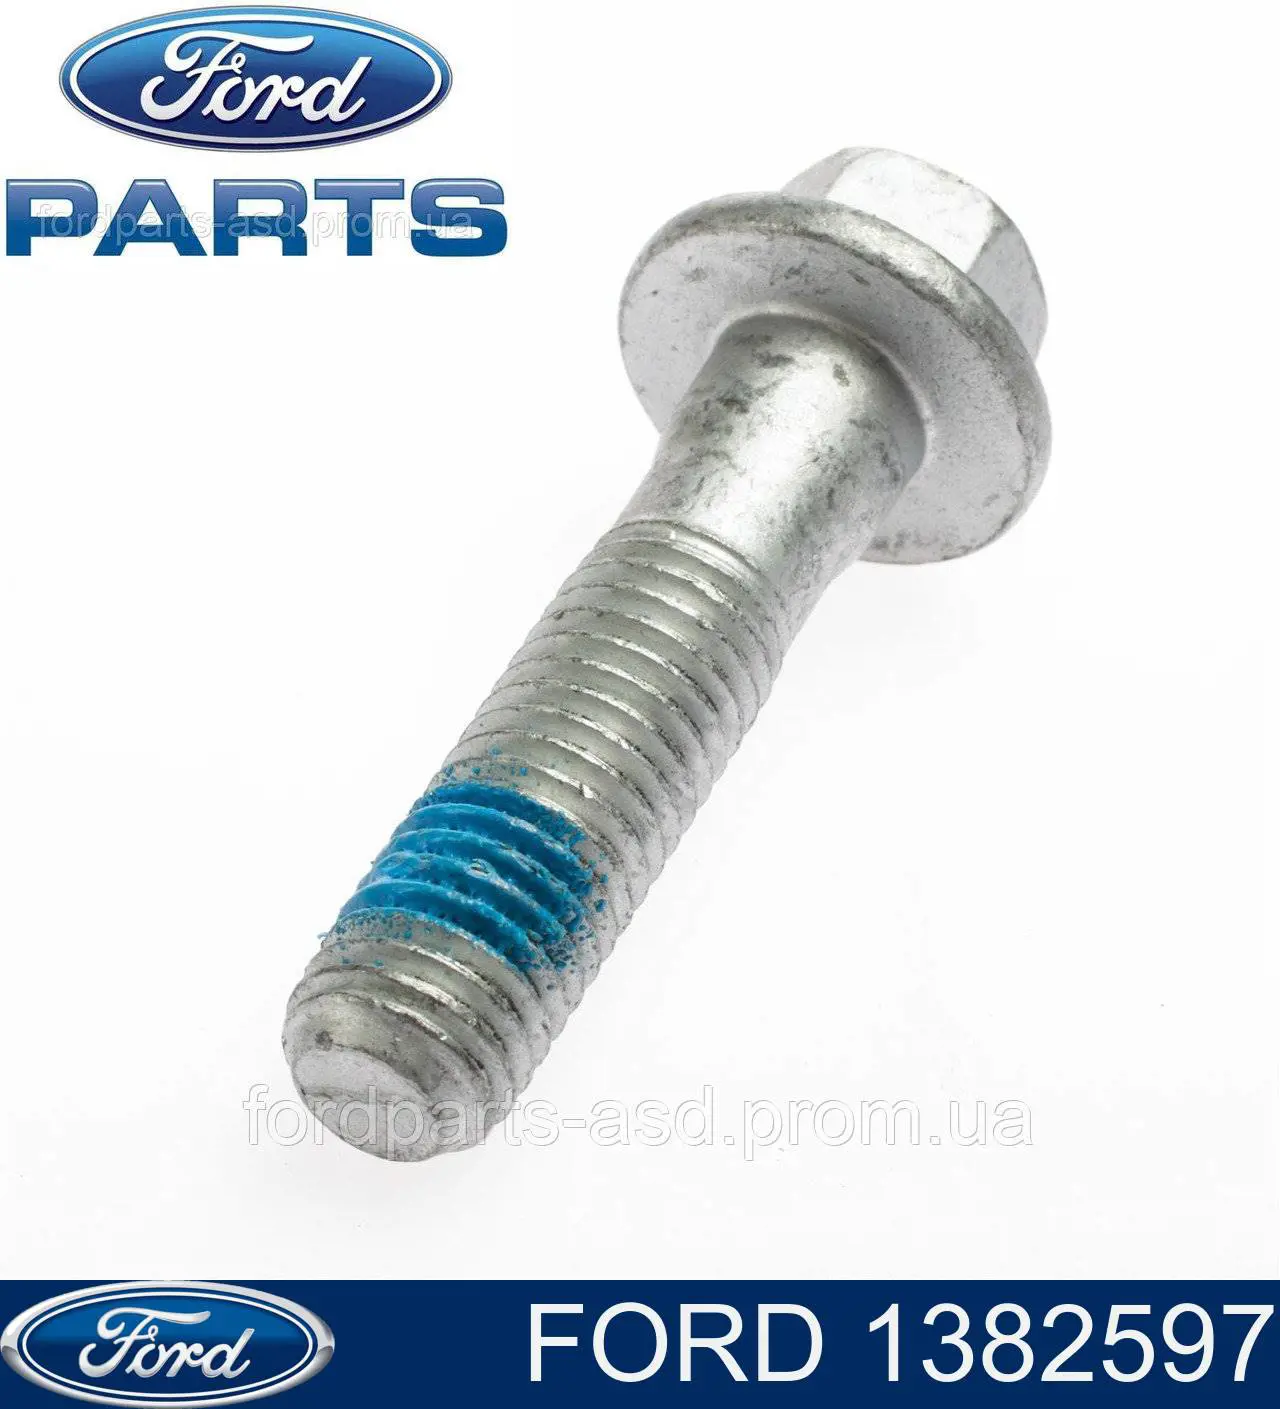 1382597 Ford болт крепления амортизатора переднего